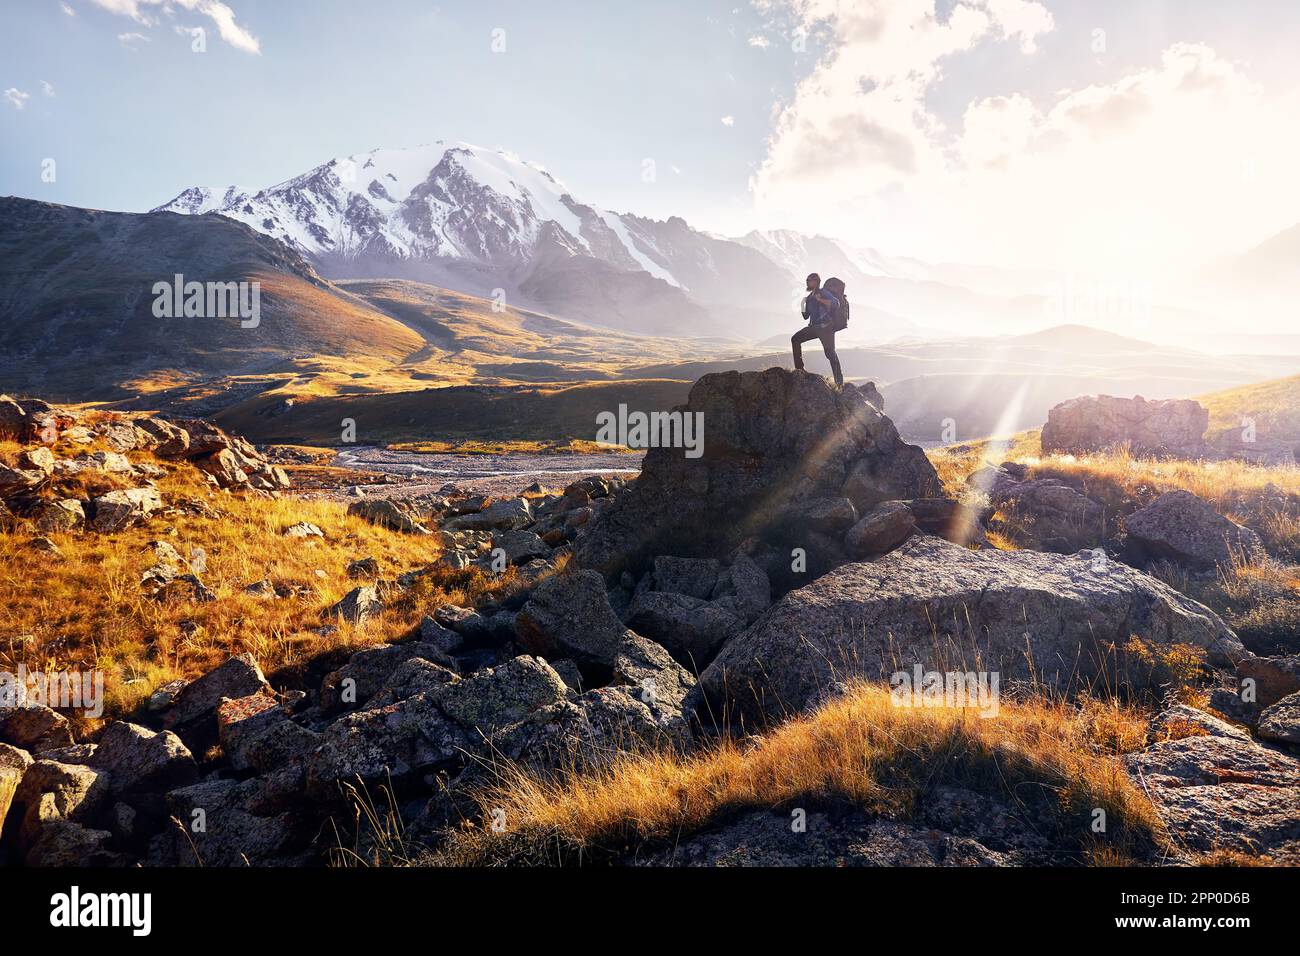 Small Man touriste avec grand sac à dos est une montée à pied dans la vallée de la montagne avec des sommets enneigés au coucher du soleil ciel nuageux fond en Asie centrale, Kazakhstan Banque D'Images